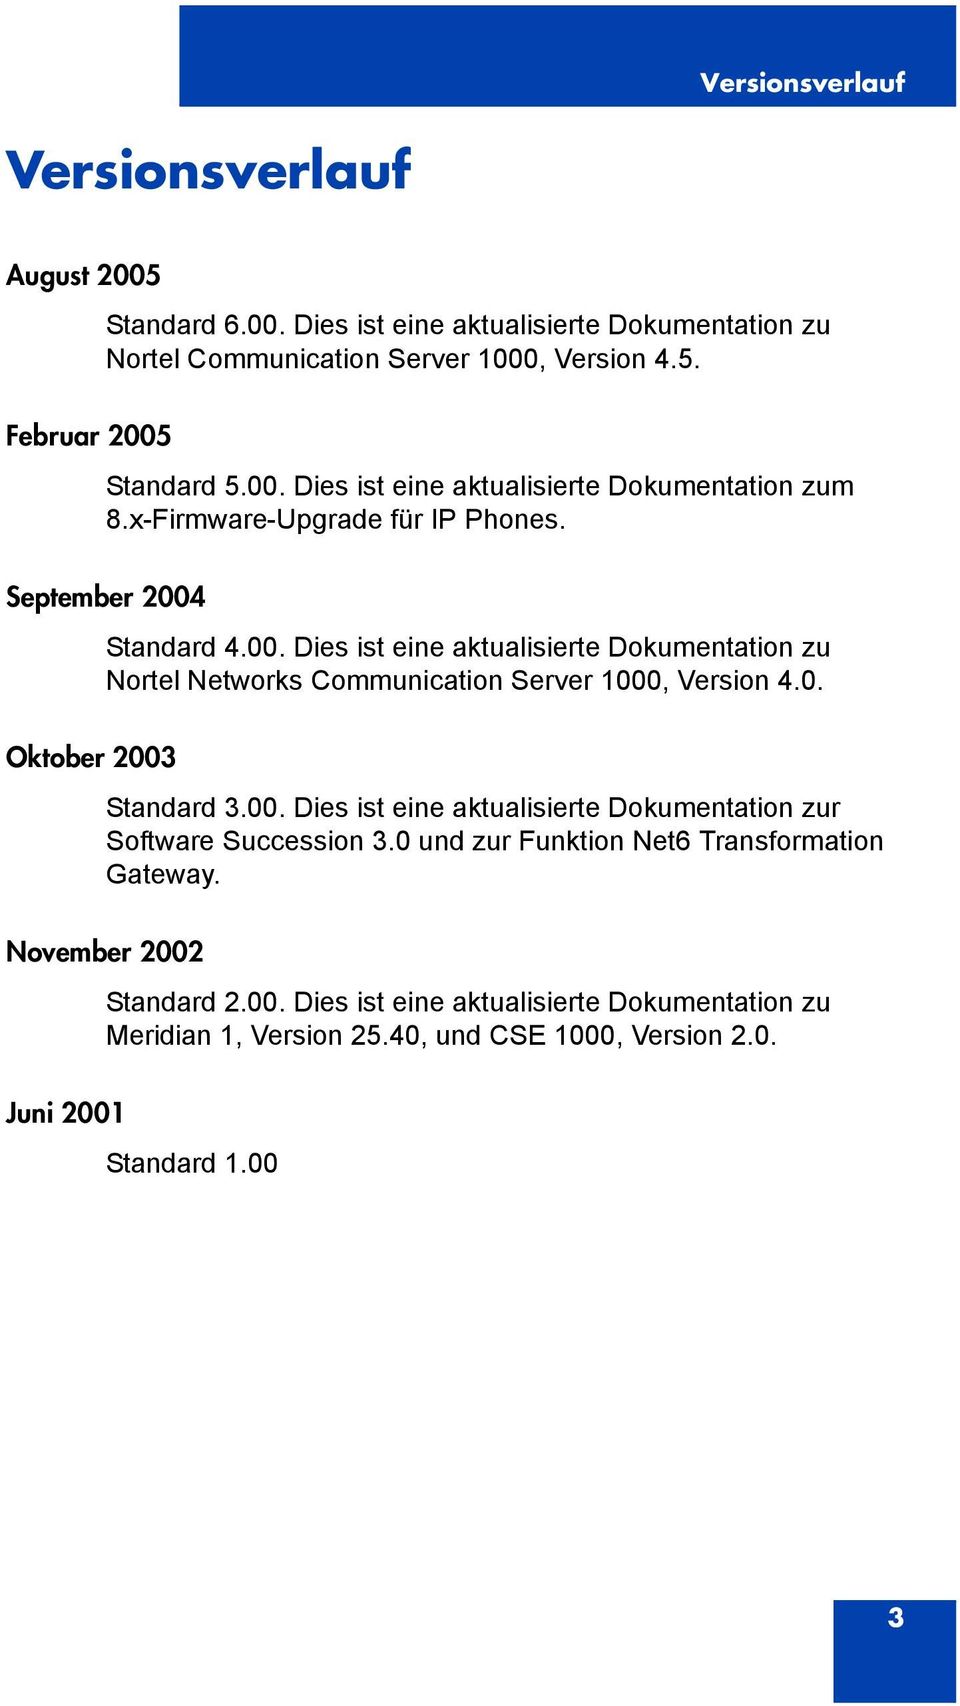 0. Standard 3.00. Dies ist eine aktualisierte Dokumentation zur Software Succession 3.0 und zur Funktion Net6 Transformation Gateway. November 2002 Juni 2001 Standard 2.00. Dies ist eine aktualisierte Dokumentation zu Meridian 1, Version 25.